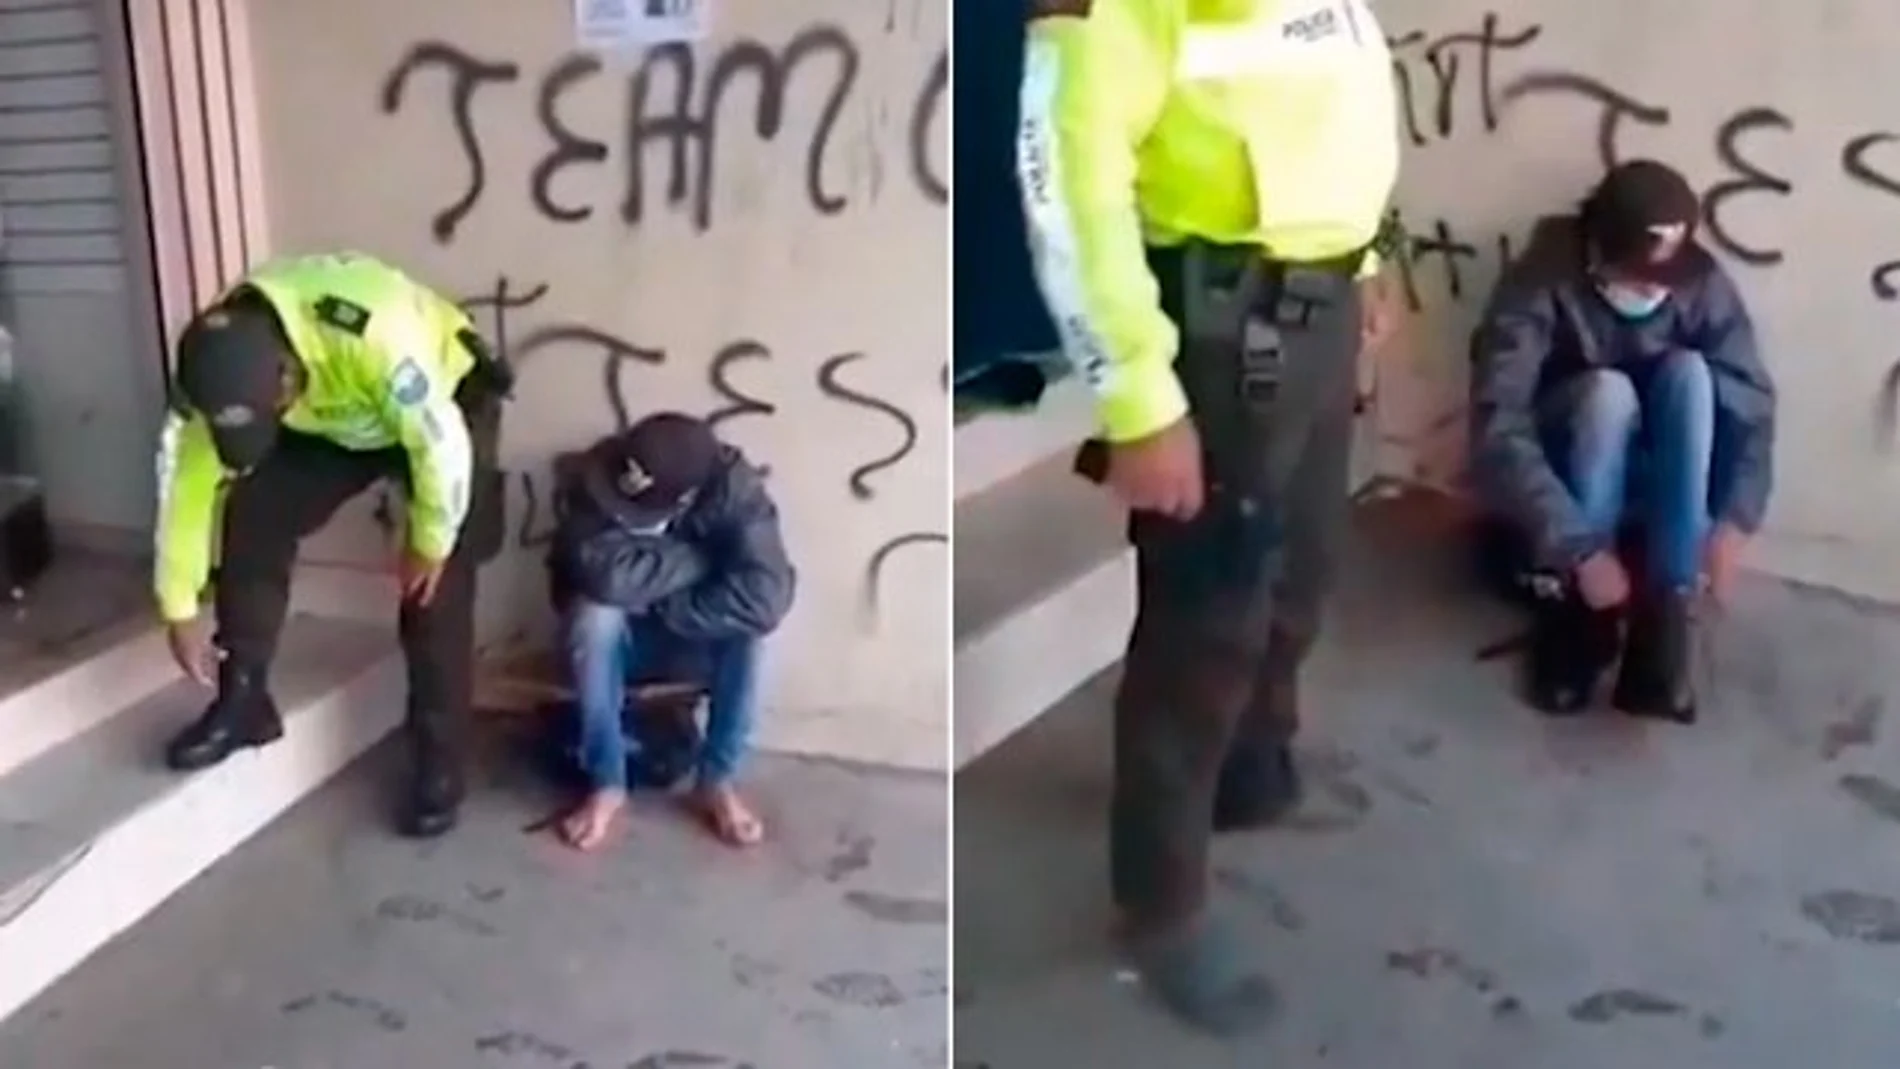 Imagen del vídeo del policía ecuatoriano entregando sus botas a un migrante colombiano